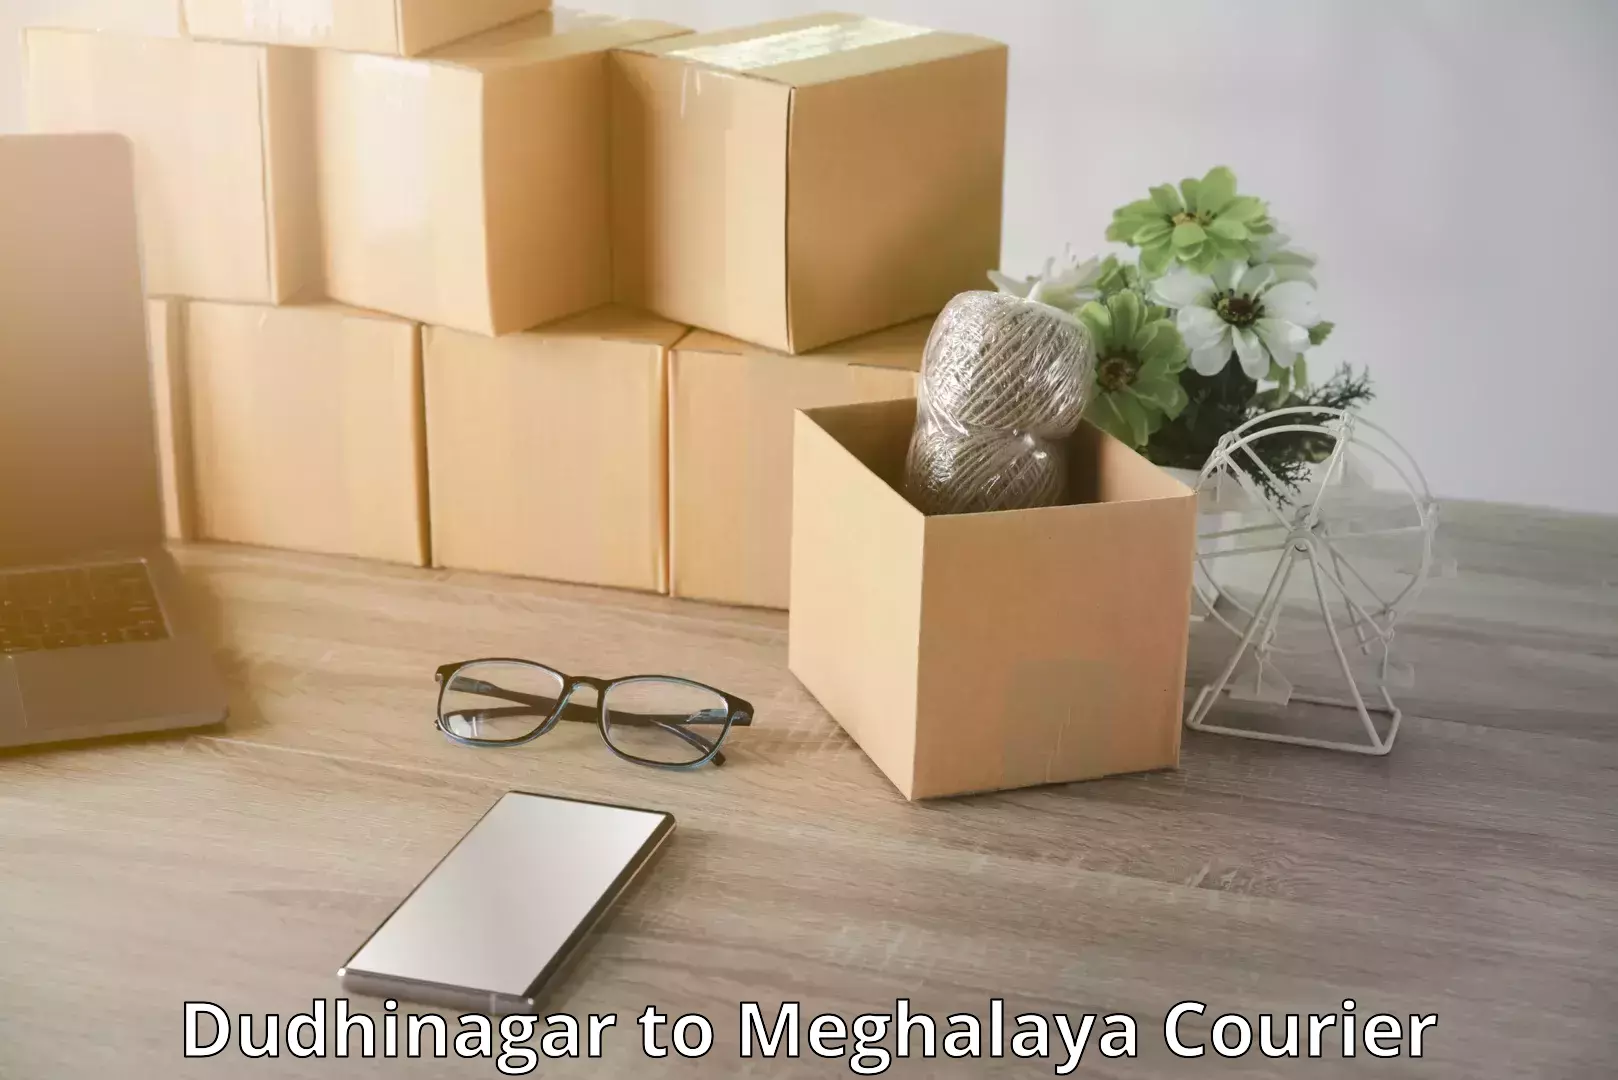 Efficient baggage transport Dudhinagar to Meghalaya